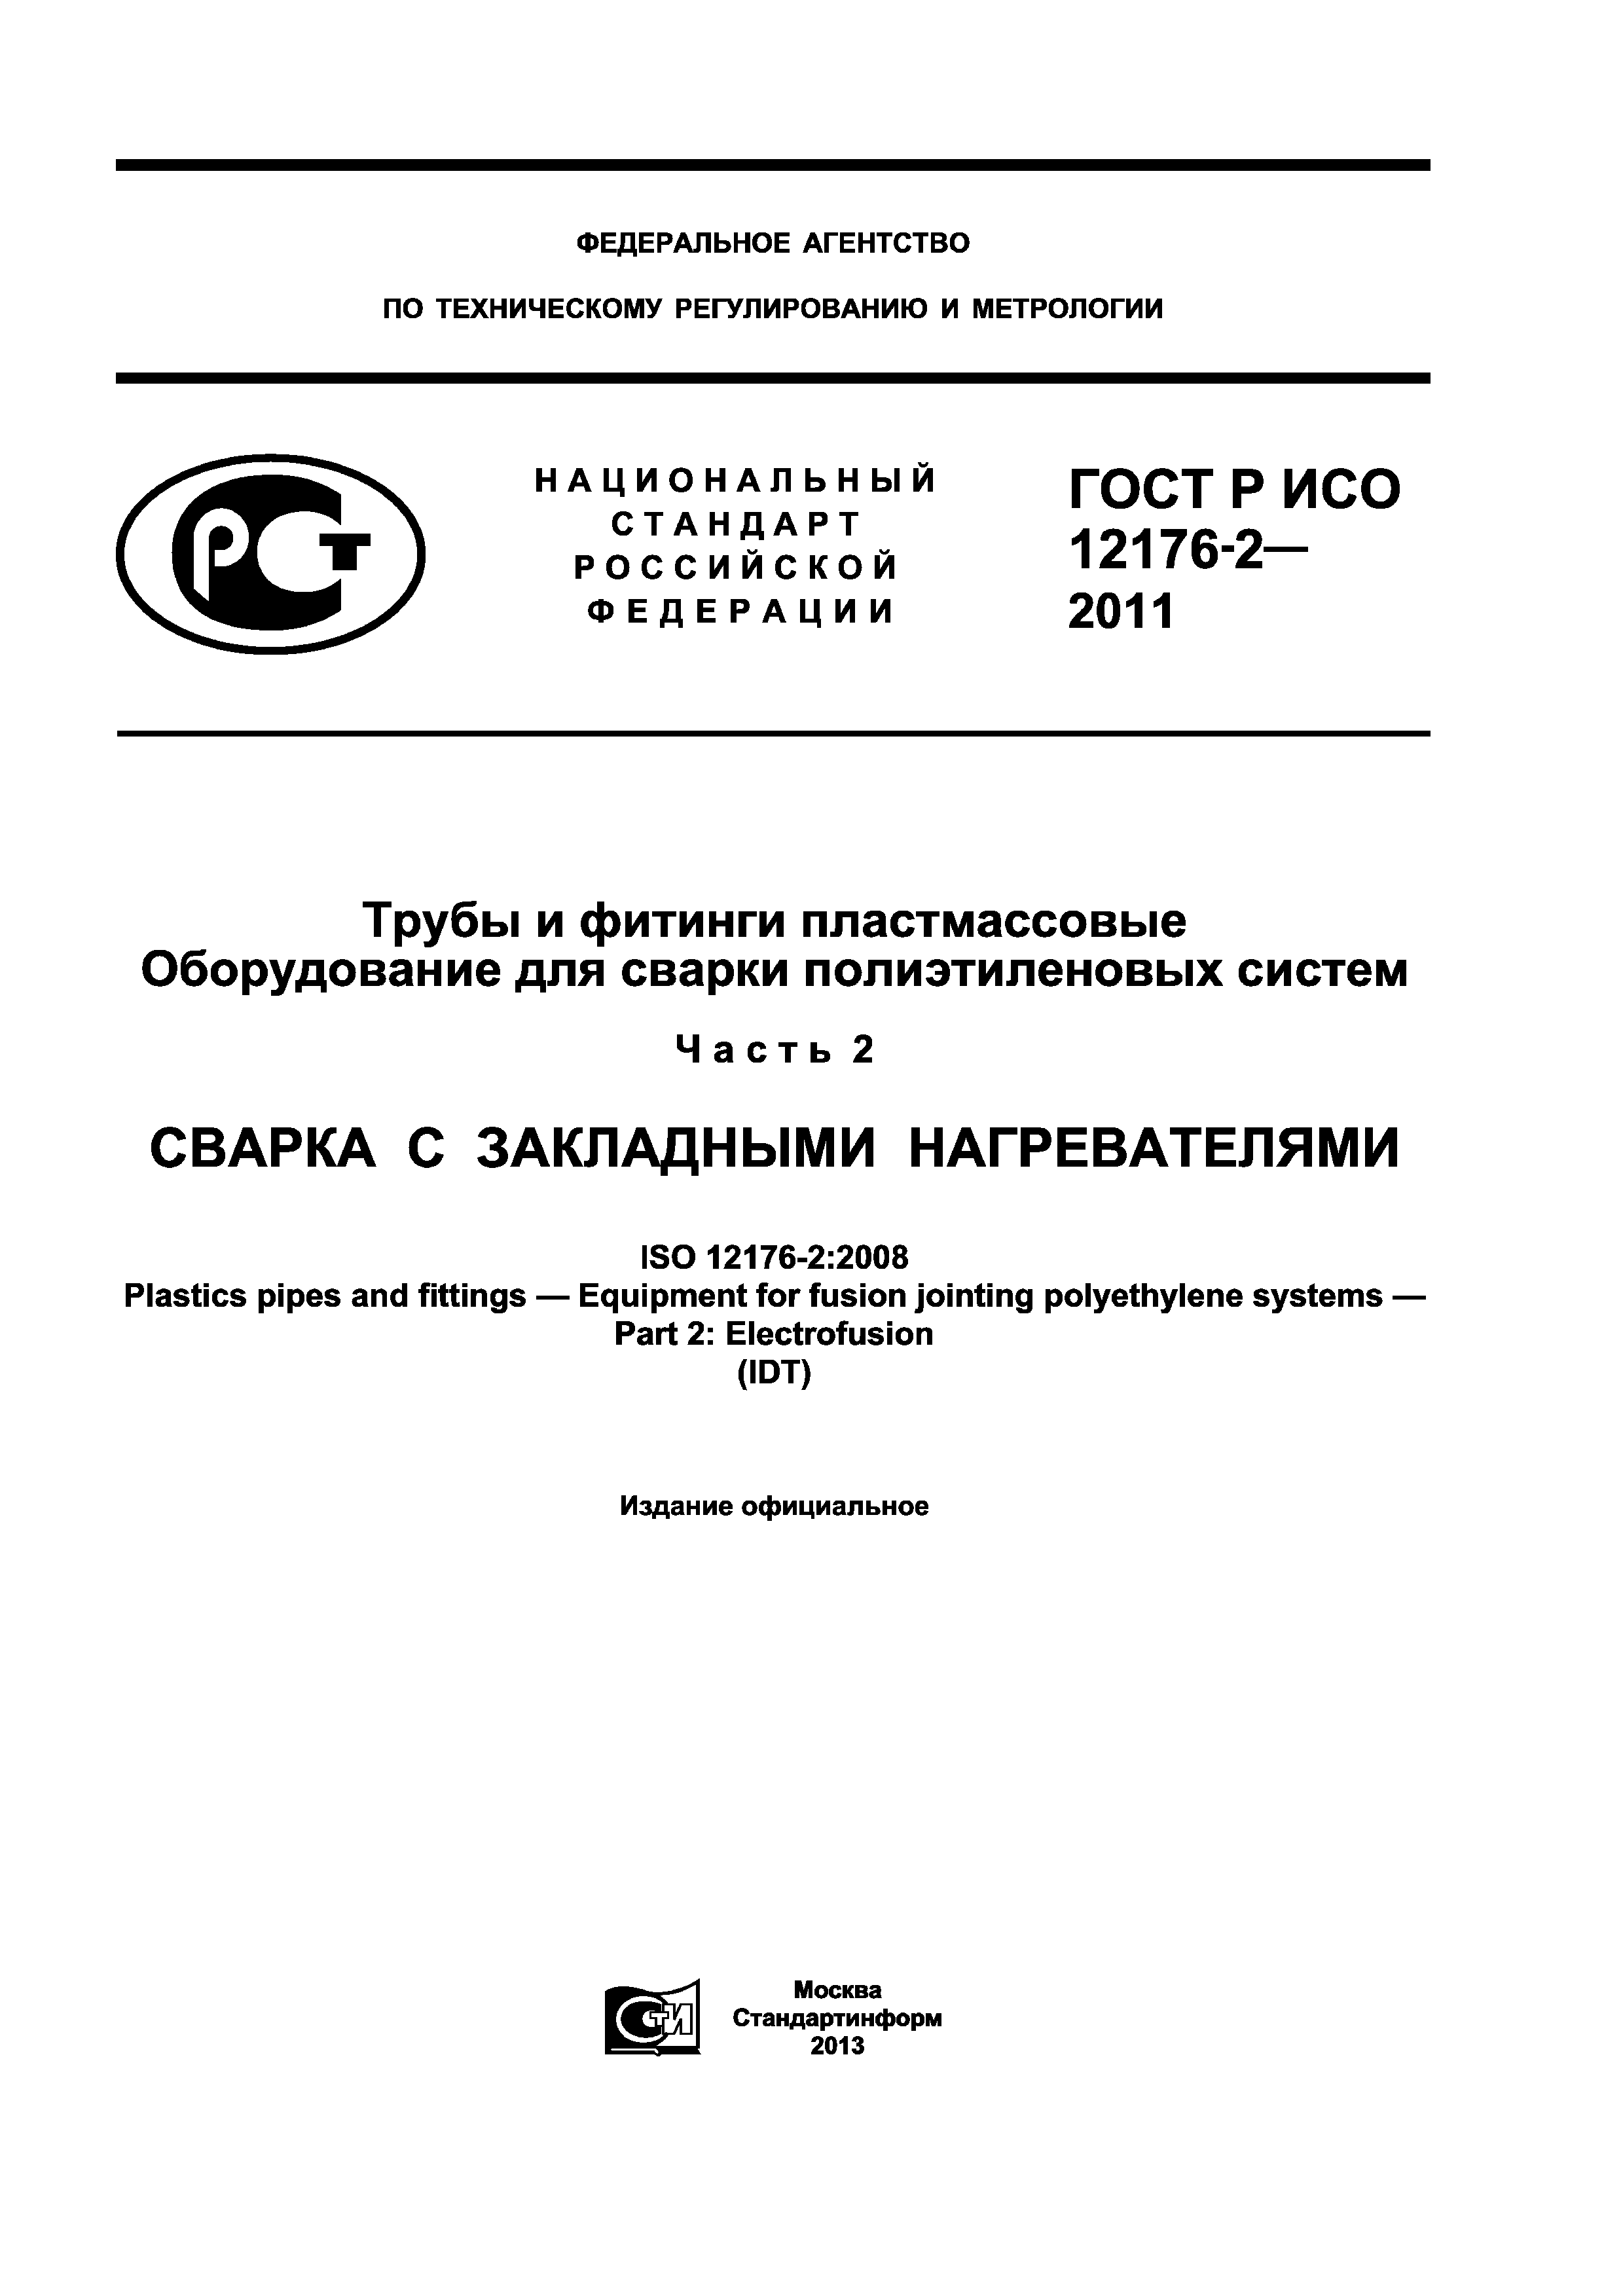 ГОСТ Р ИСО 12176-2-2011